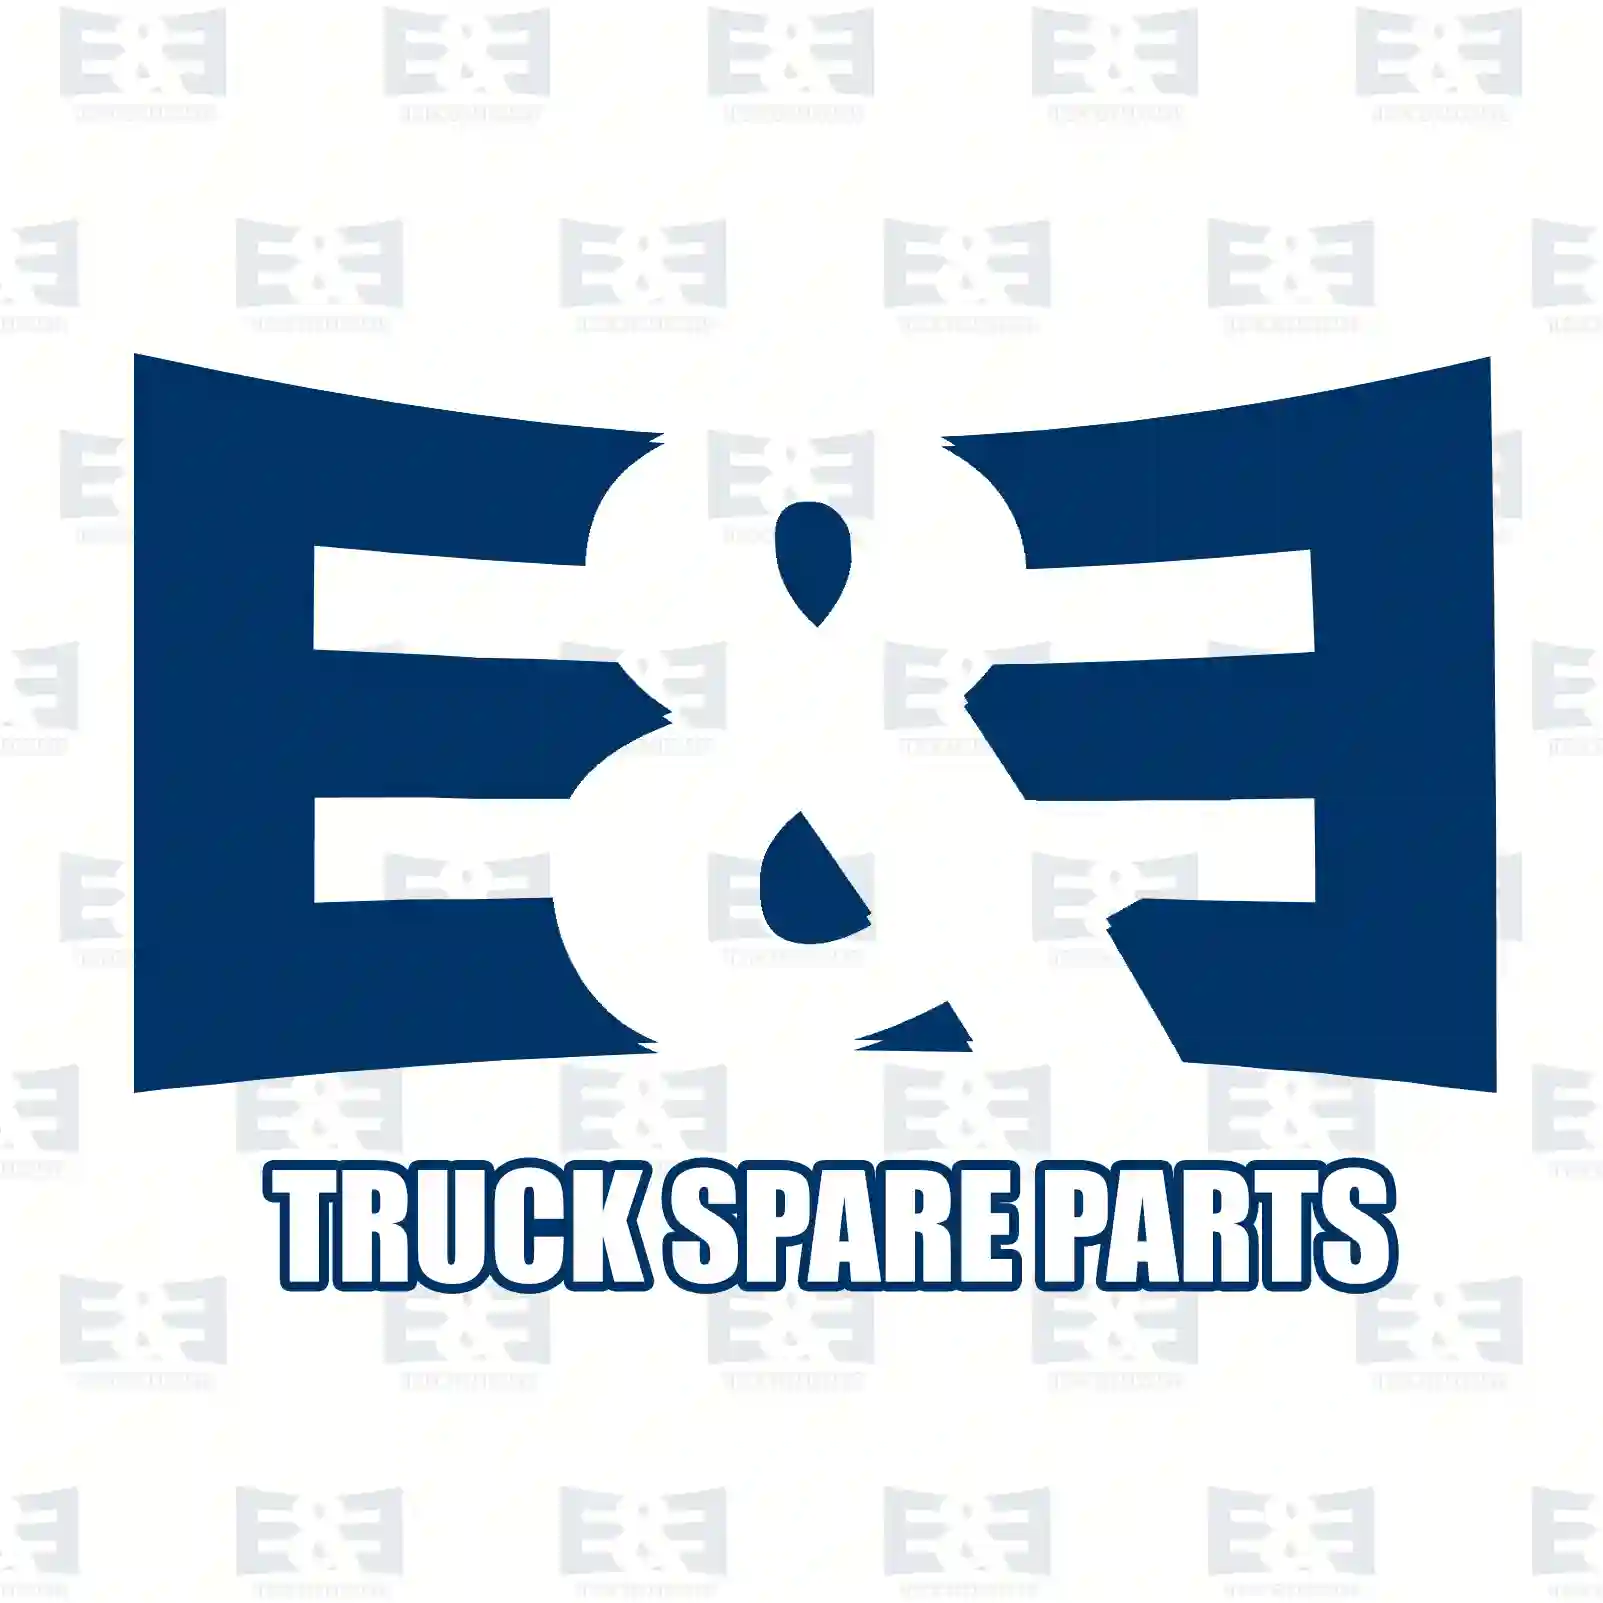 Turbocharger, 2E2206537, 10574370, 1446732, 1574370, 574370 ||  2E2206537 E&E Truck Spare Parts | Truck Spare Parts, Auotomotive Spare Parts Turbocharger, 2E2206537, 10574370, 1446732, 1574370, 574370 ||  2E2206537 E&E Truck Spare Parts | Truck Spare Parts, Auotomotive Spare Parts